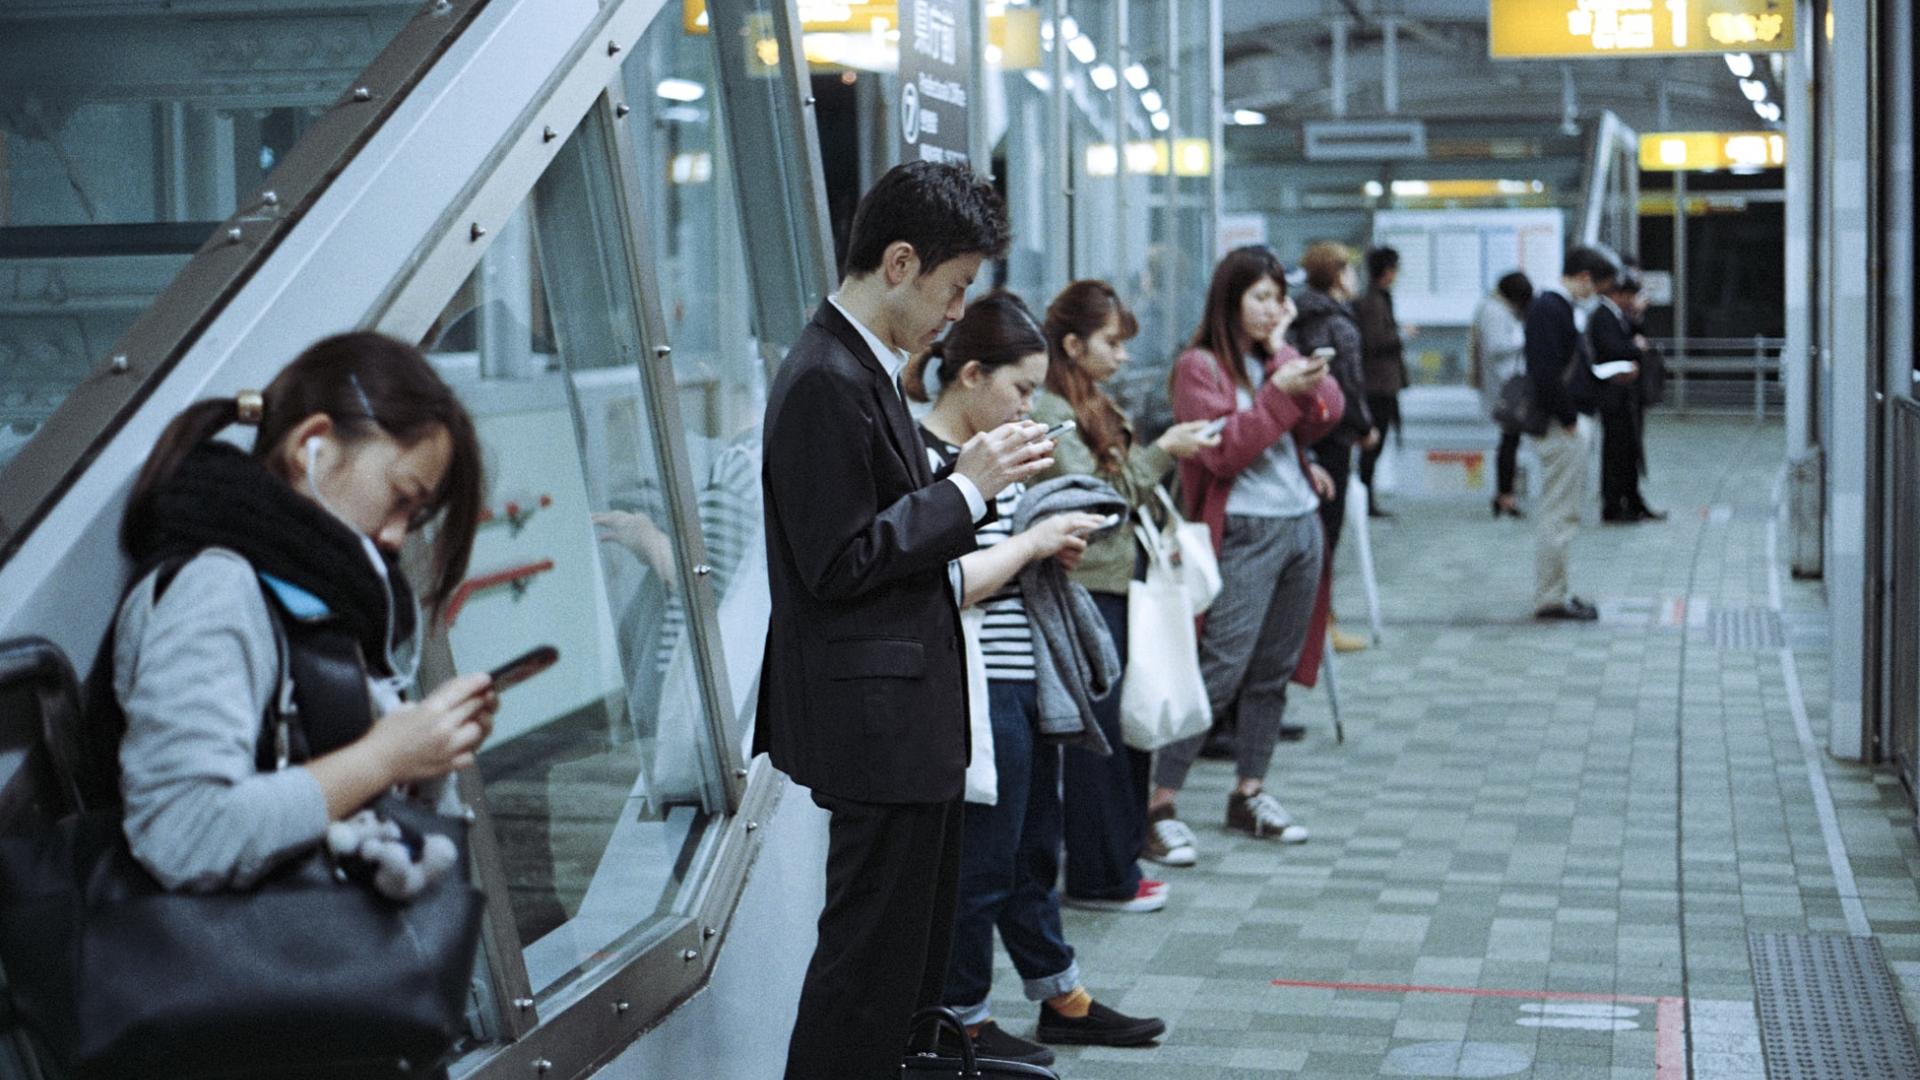 Handysucht, Menschen in der U-Bahn schauen aufs Handy